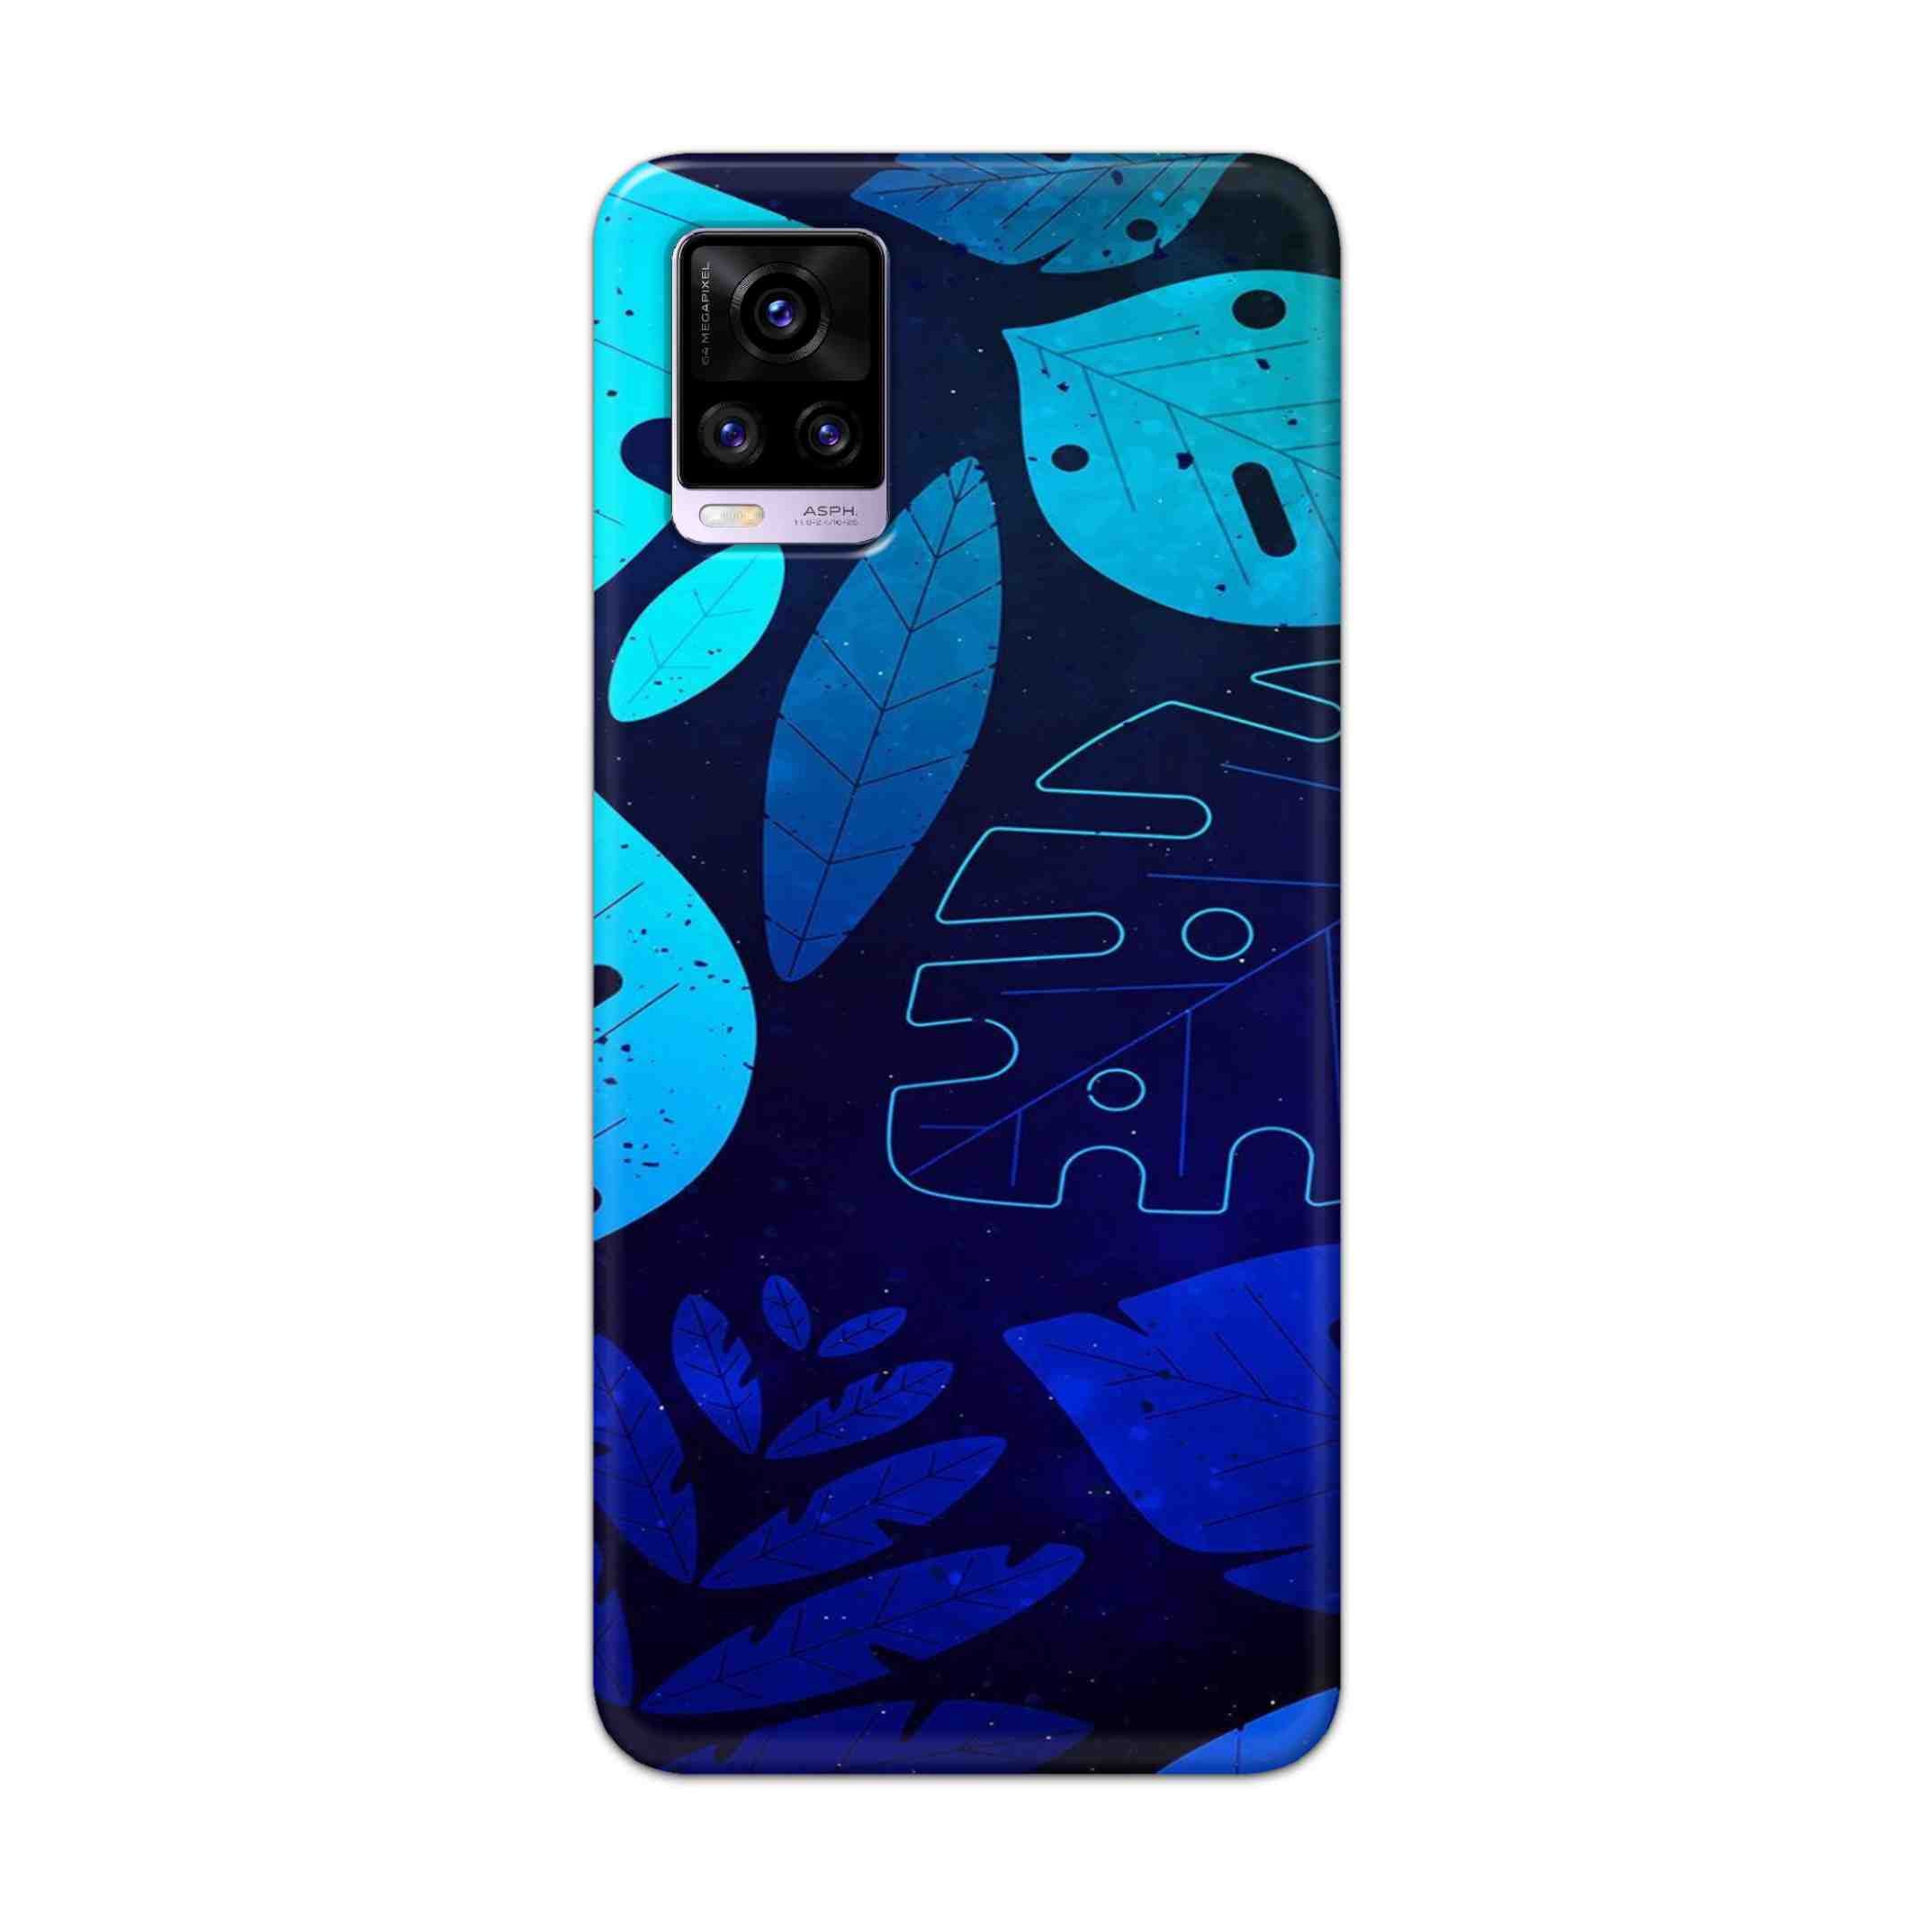 Buy Neon Leaf Hard Back Mobile Phone Case Cover For Vivo V20 Online